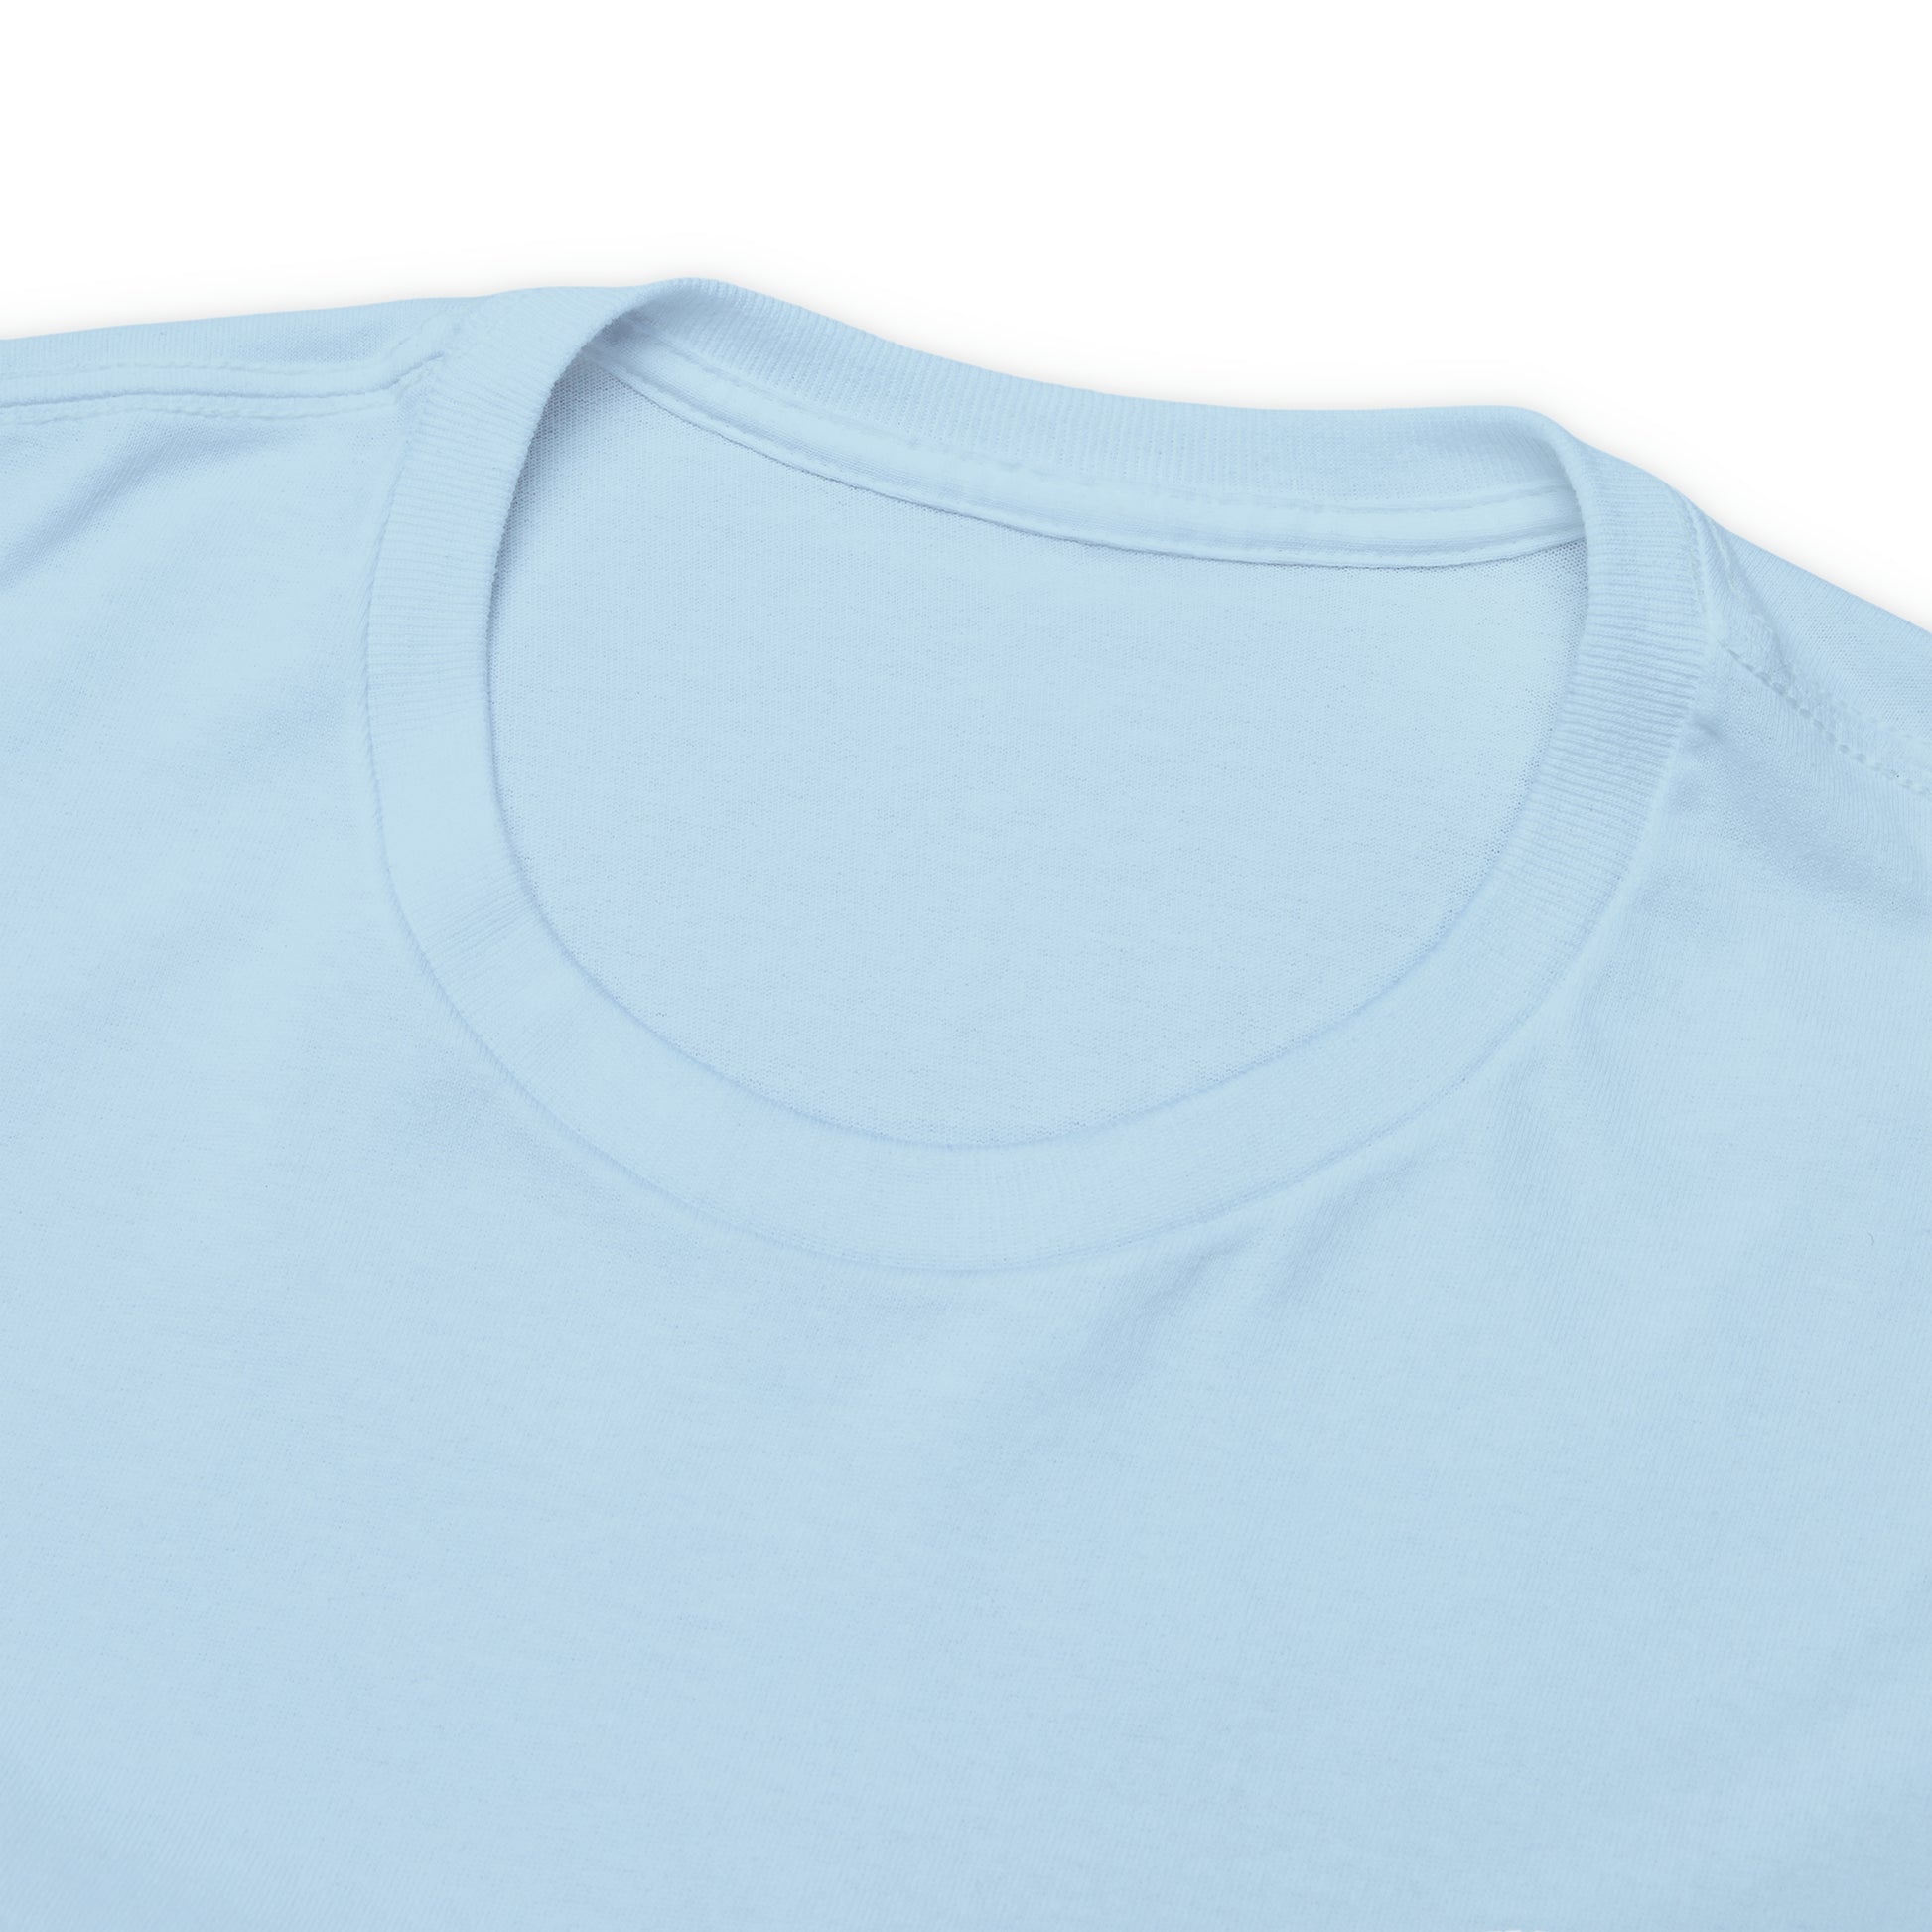 Master Baiters T-Shirt Mahi Mahi Short-Sleeve Unisex T-Shirt